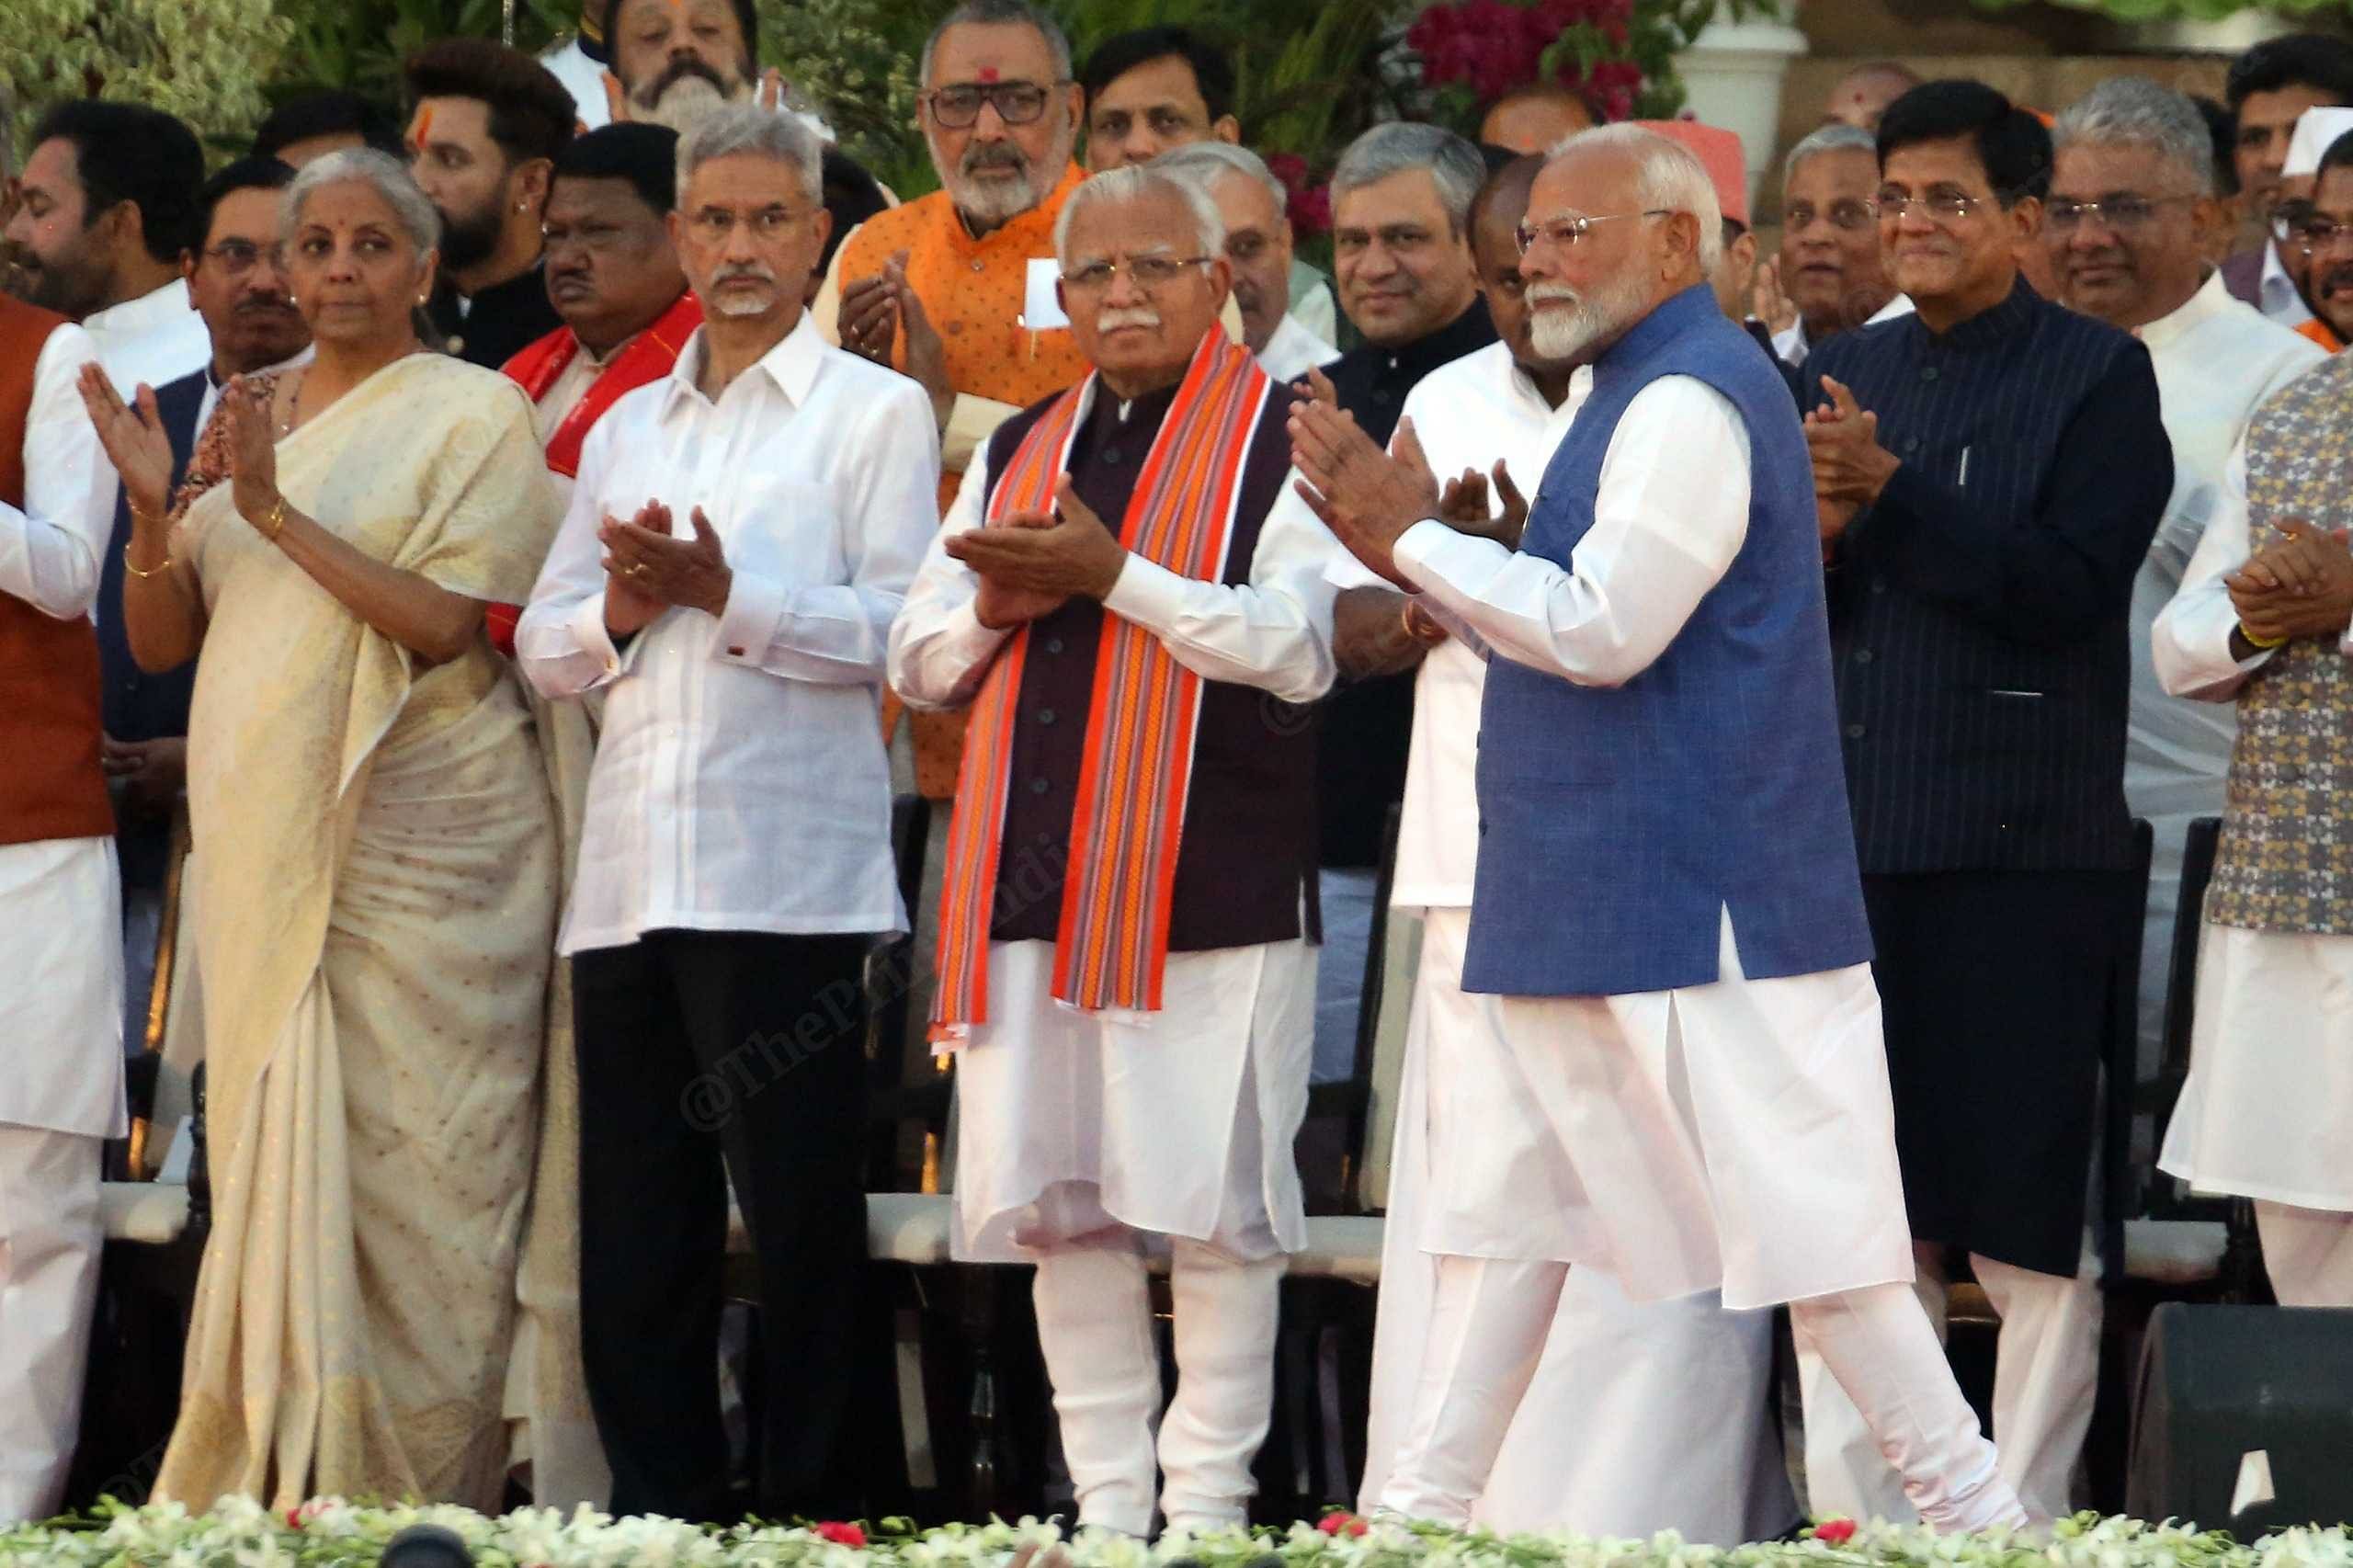 Modi Cabinet 3.0: Shah, Rajnath, Jaishankar & Sitharaman retain portfolios, Shivraj gets agriculture